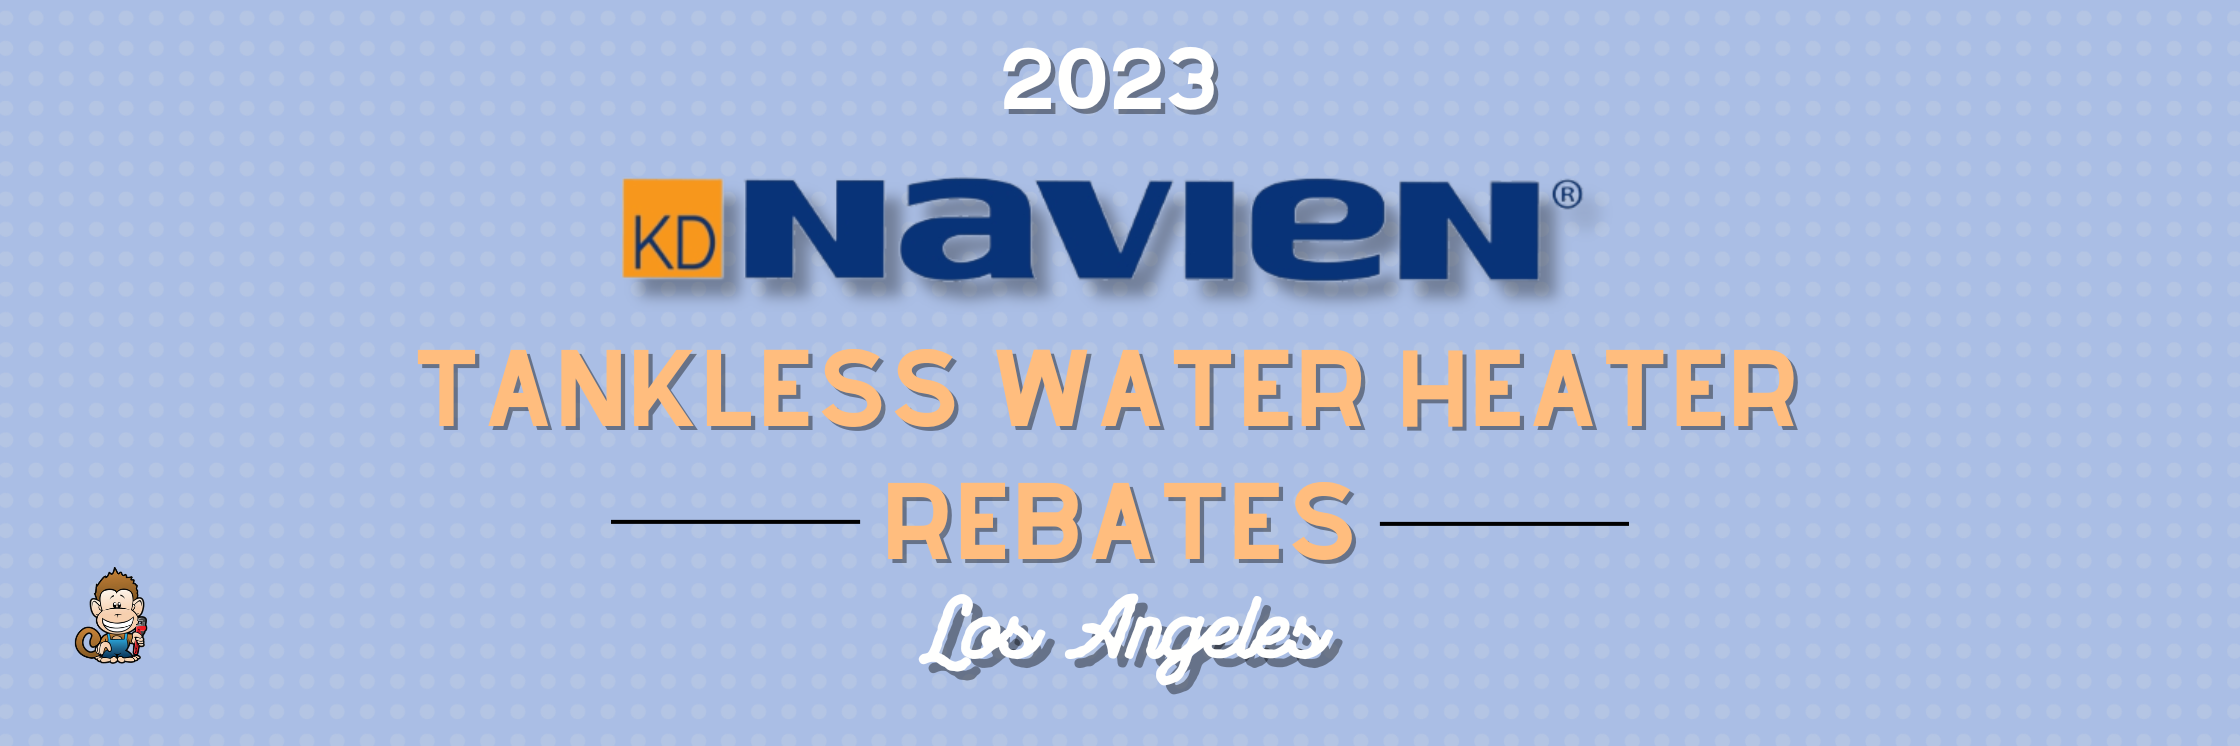 2023-navien-tankless-water-heater-rebates-for-los-angeles